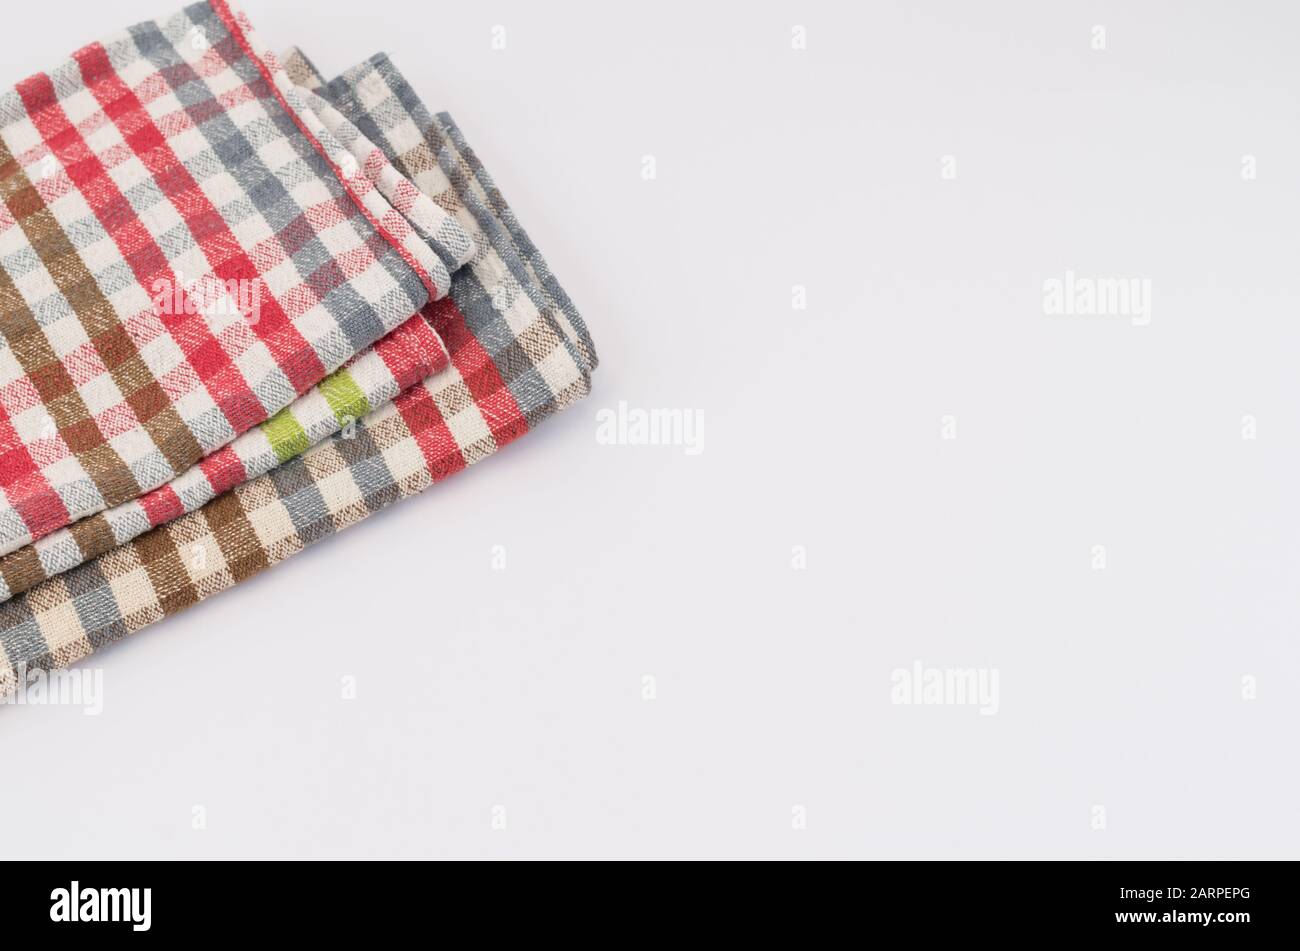 les objets textiles continuent de vivre - serviettes sur fond blanc Banque D'Images